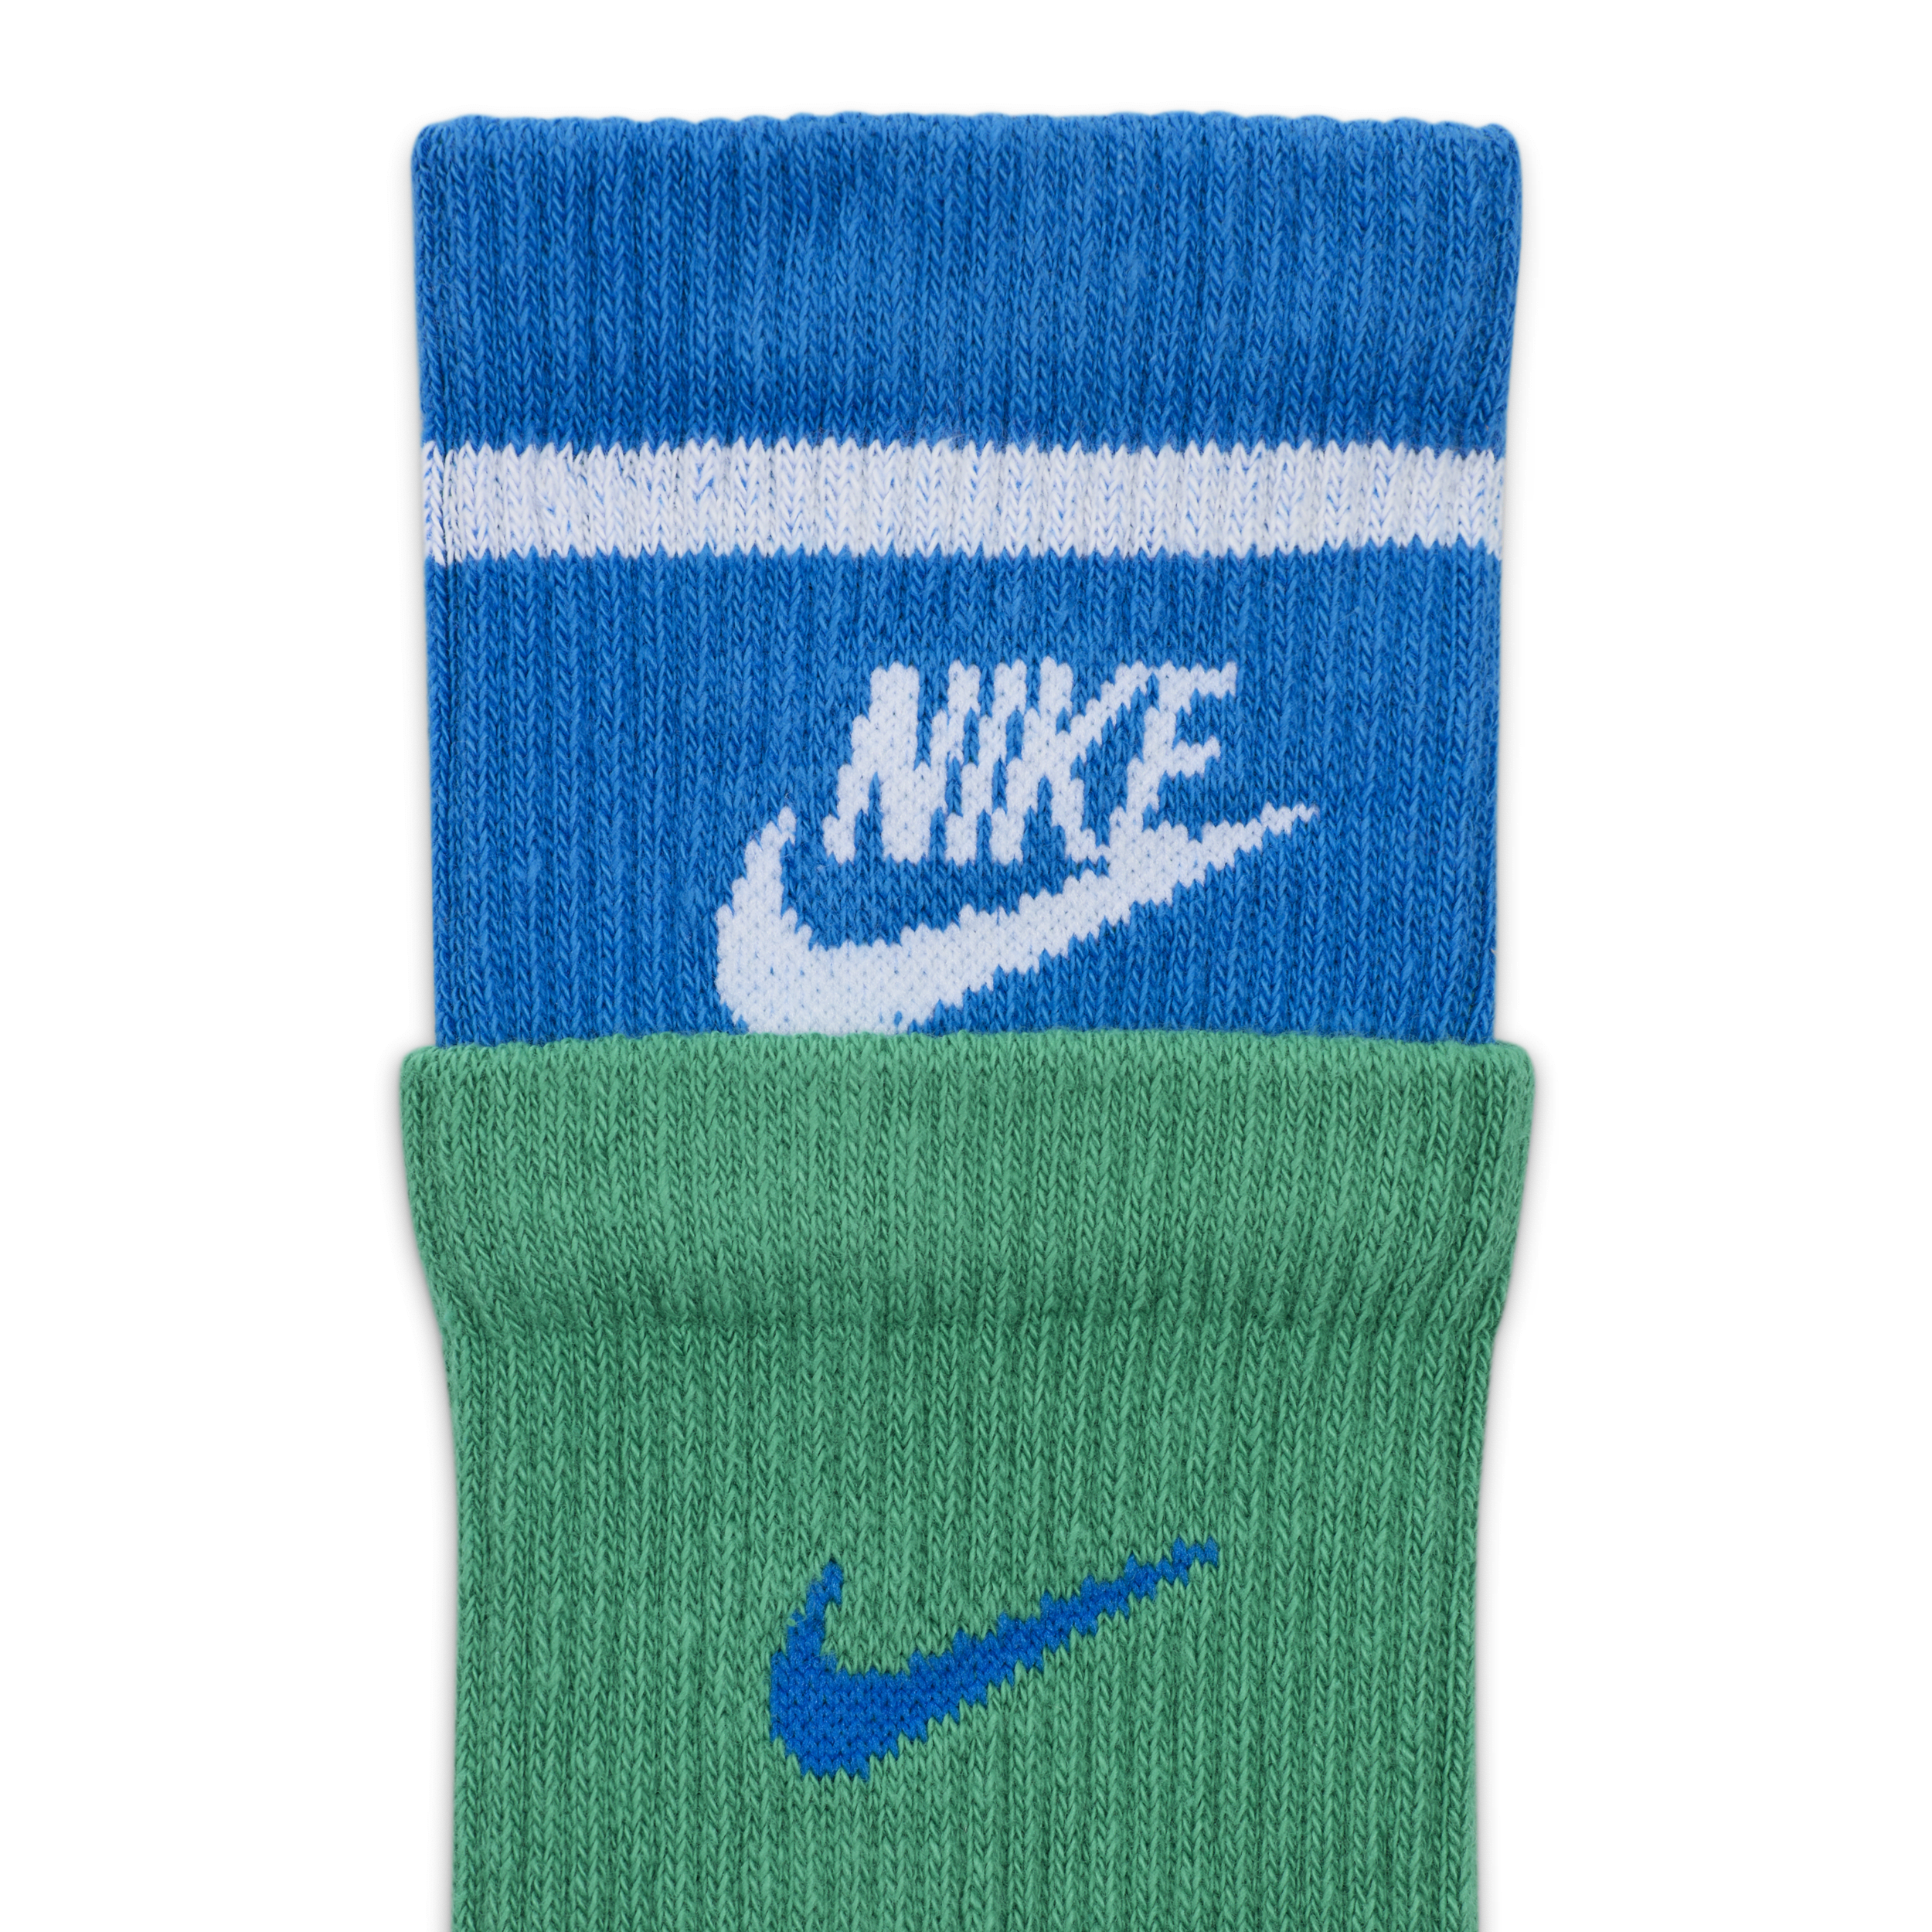 Nike Everyday Plus Crew sokken met demping (1 paar) Groen